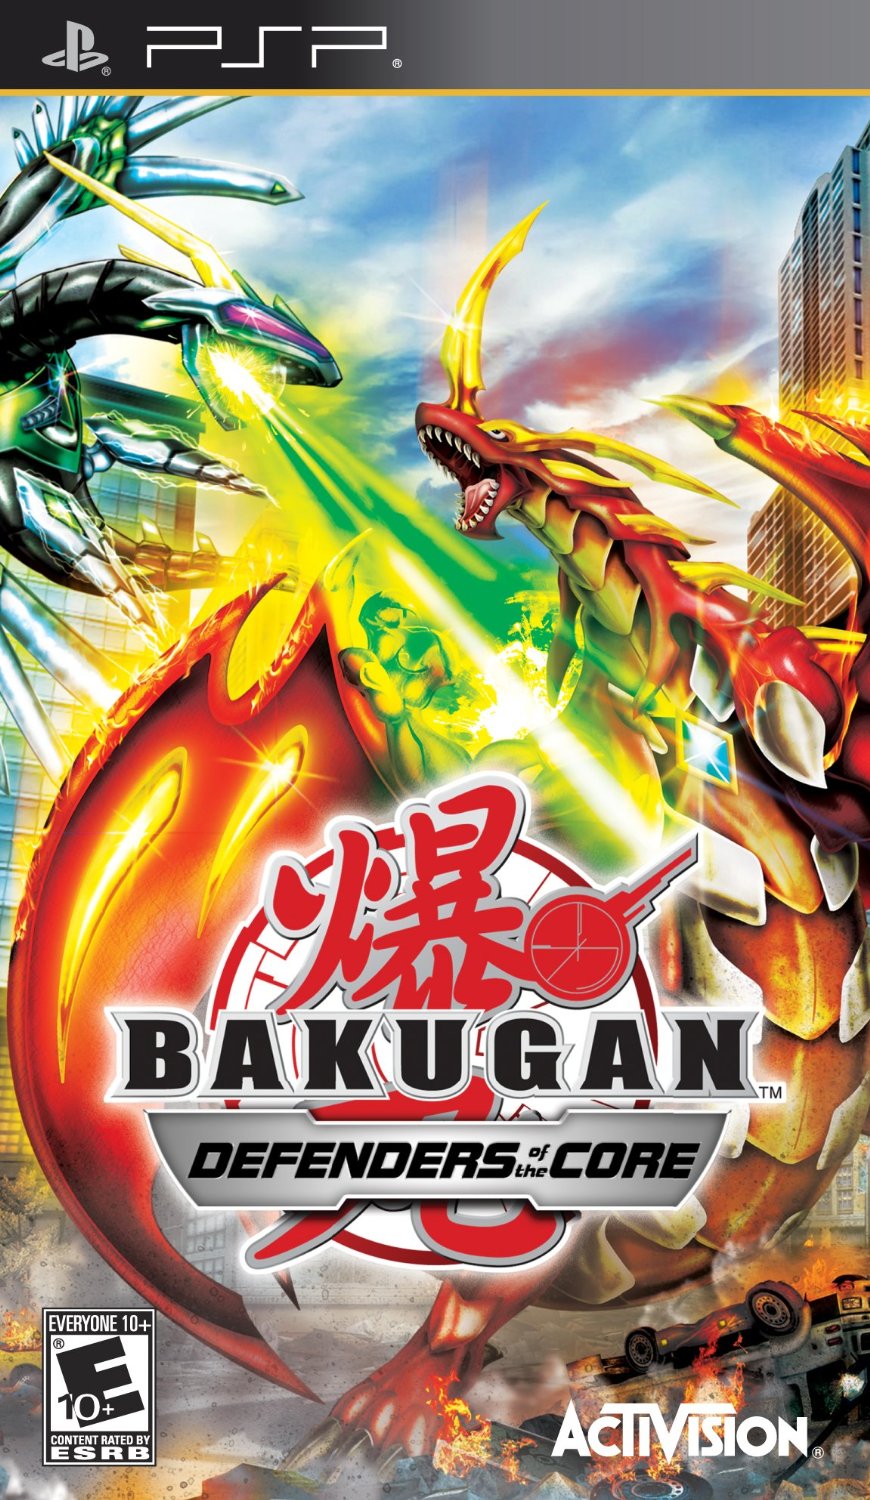 Download Game Bakugan Battle Barwlers Defender of the